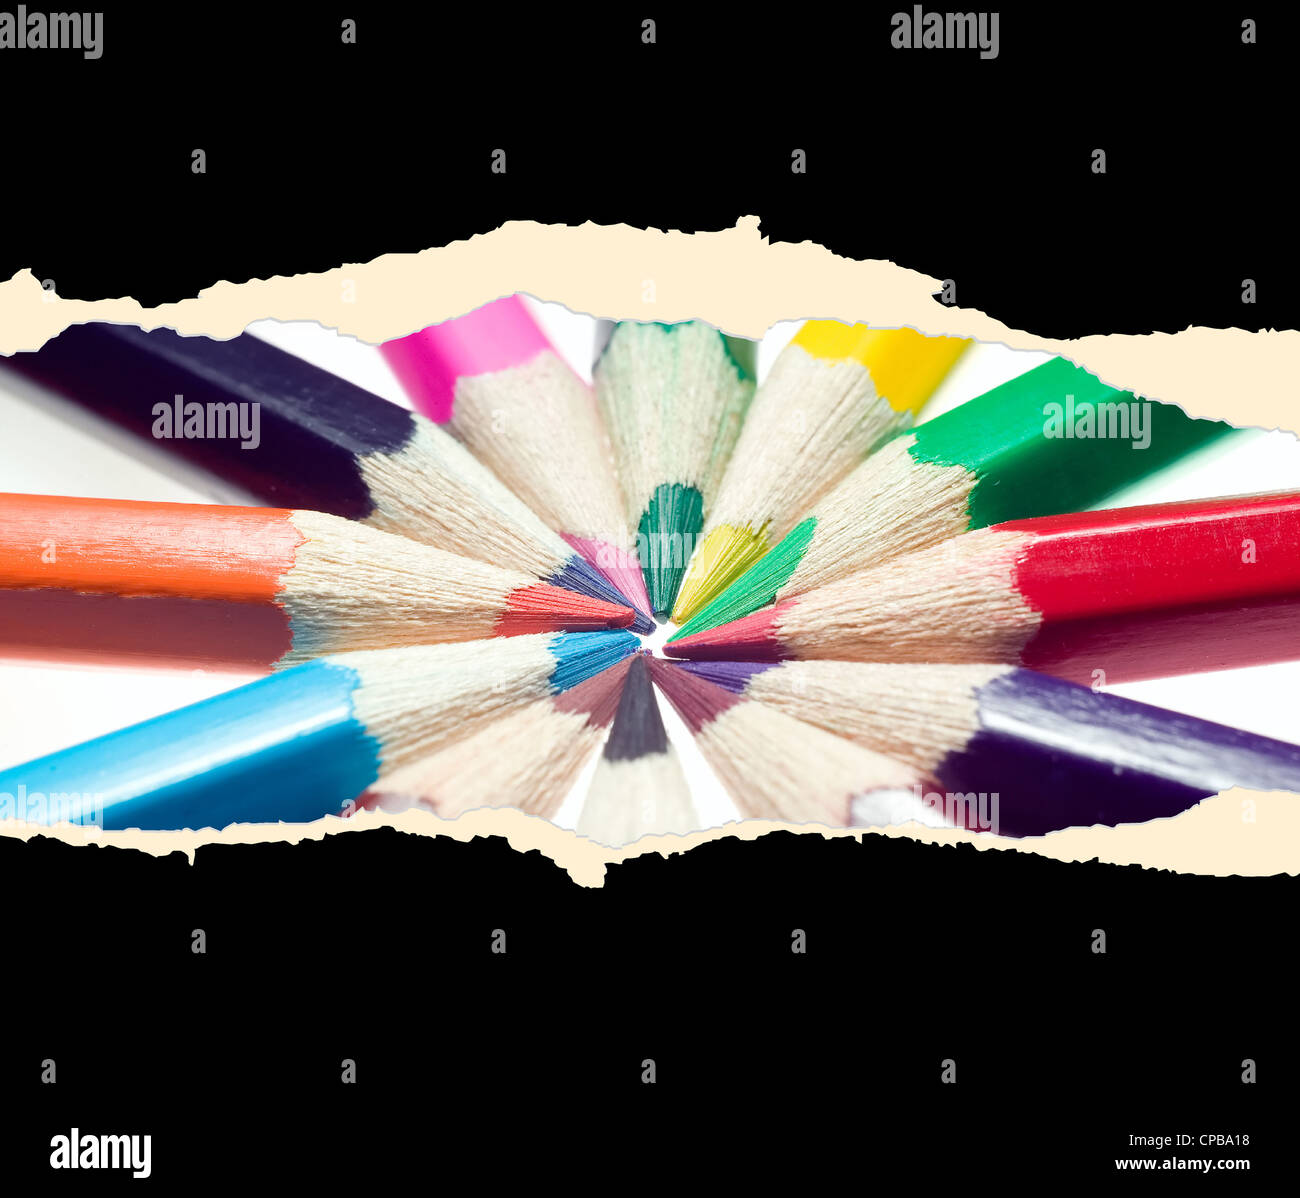 Una hoja de papel con lápices de colores Foto de stock